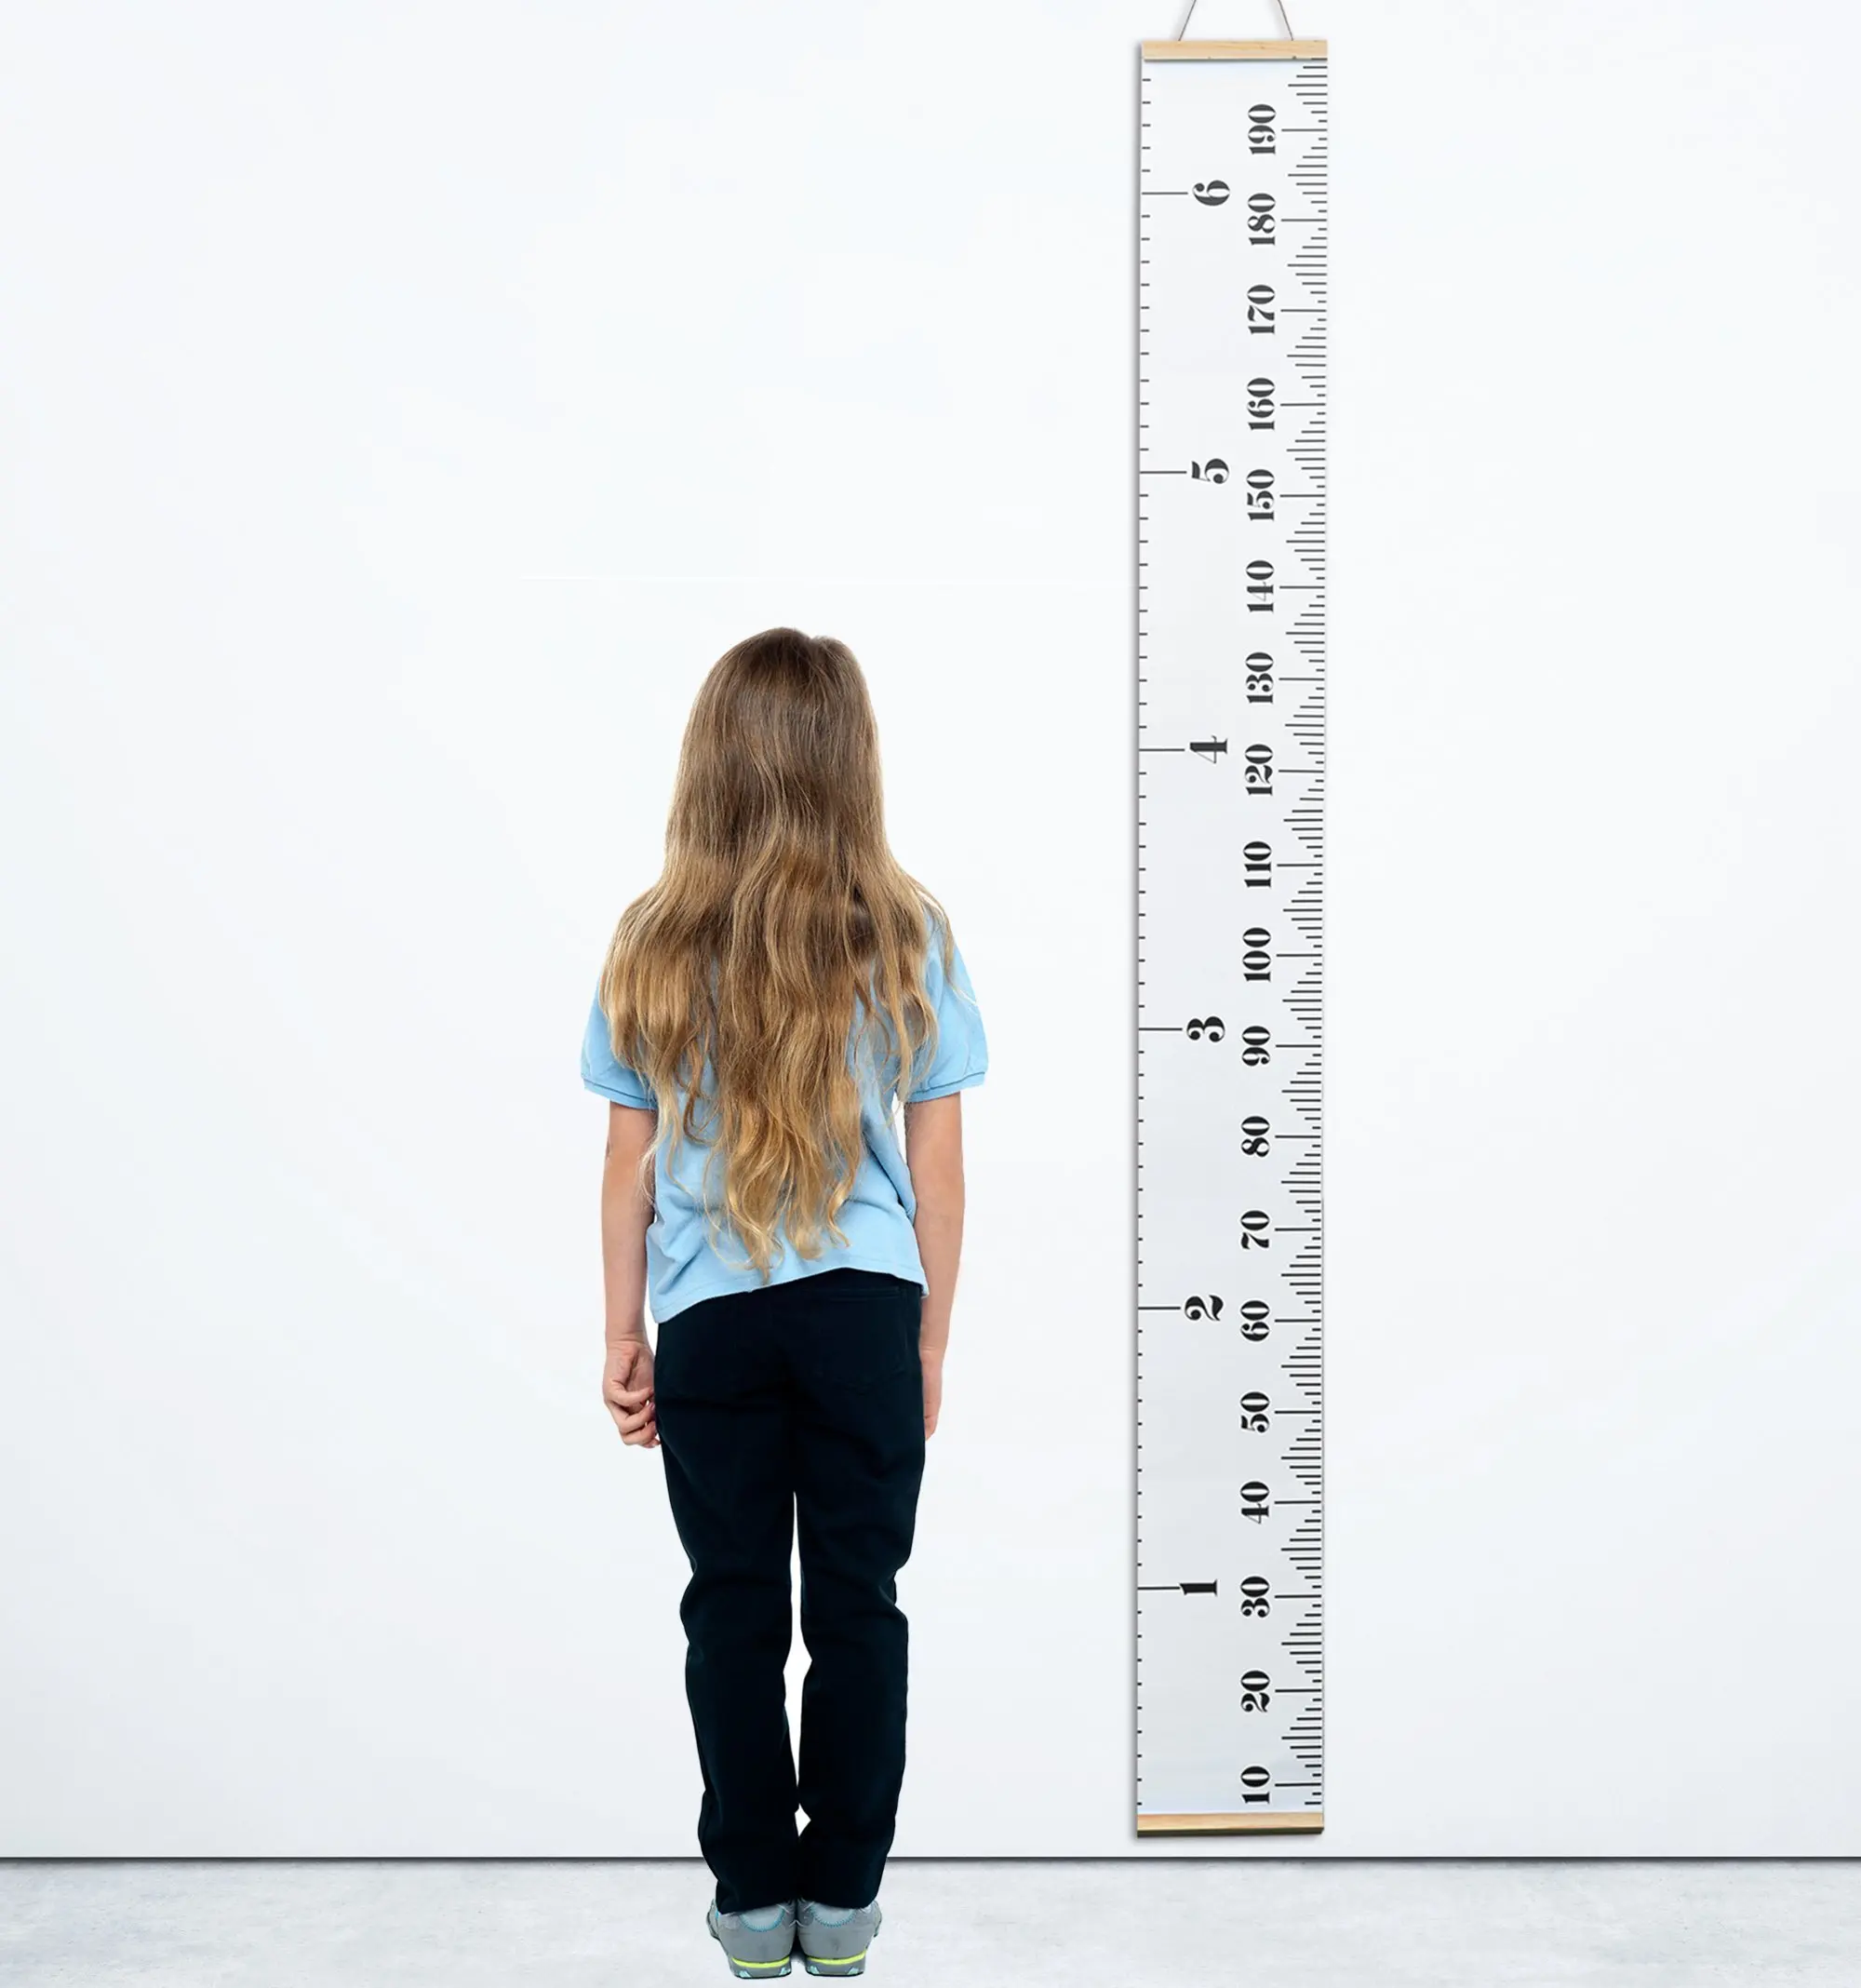 Height wp. Линейка 2 метра рост. Линейка роста человека. Измеритель роста человека. Измерительная линейка для измерения роста.